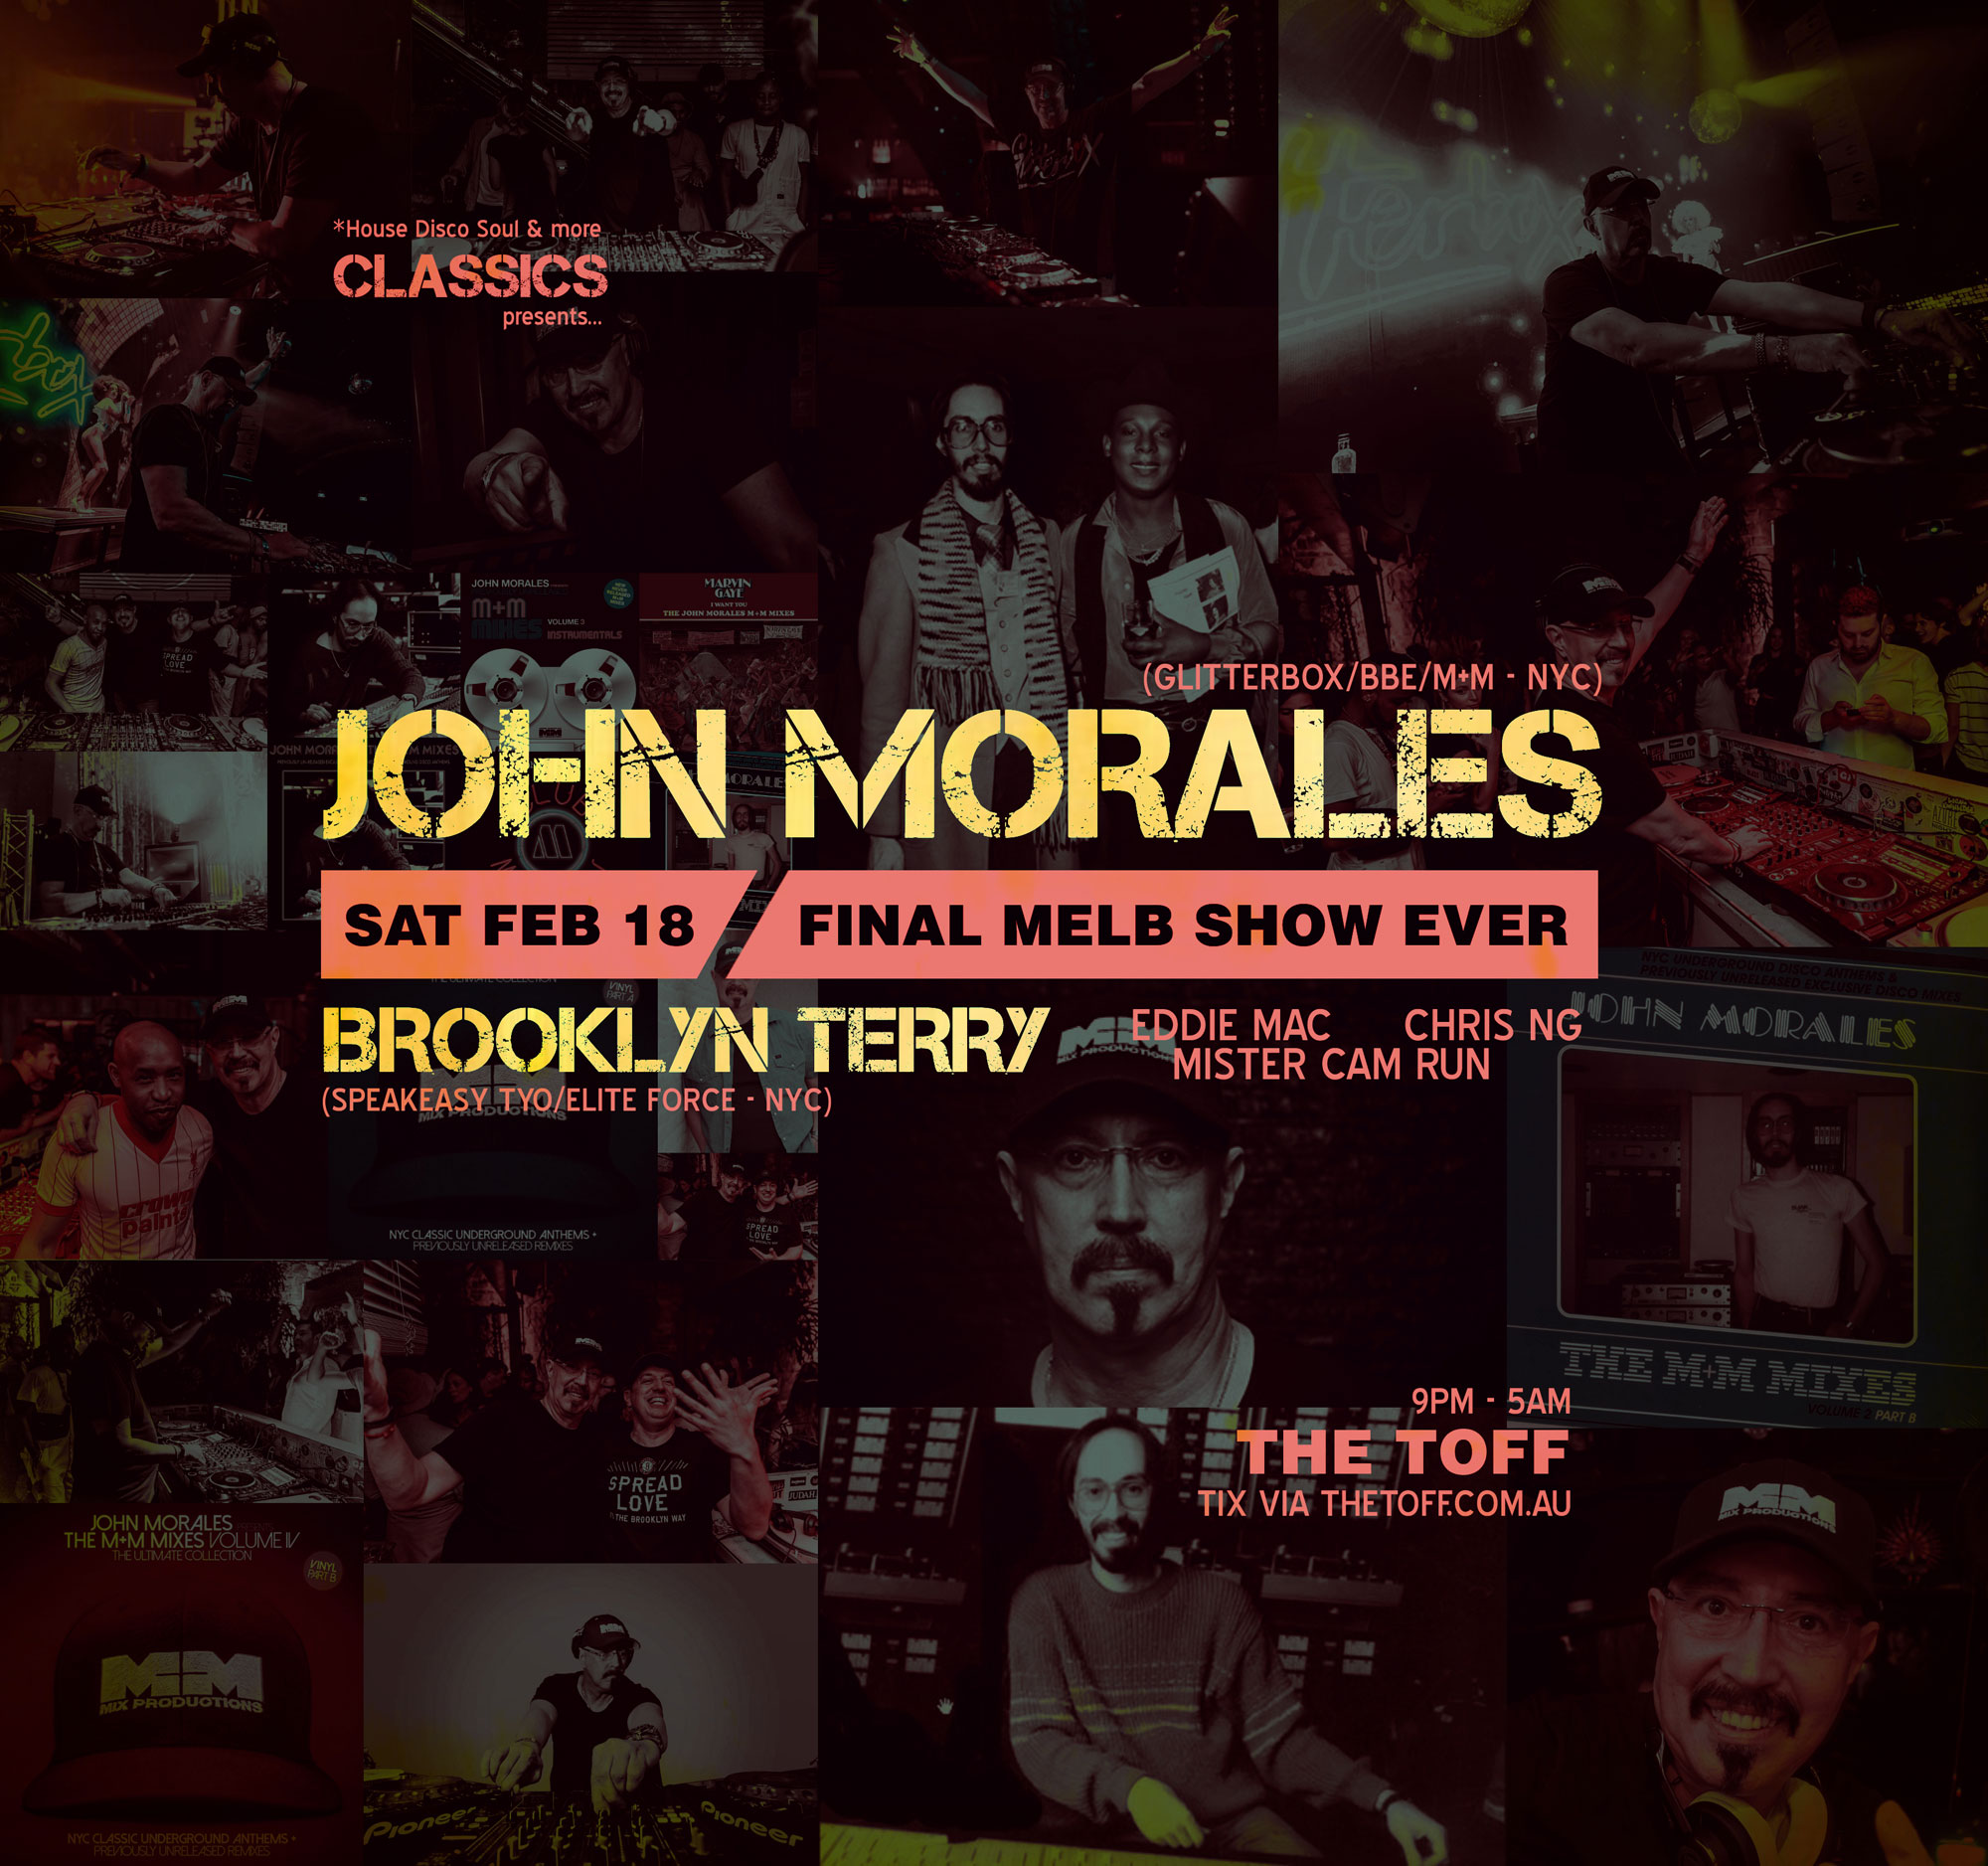 Classics presents John Morales (final farewell show) & Brooklyn Terry Sat Feb 18 @ The Toff